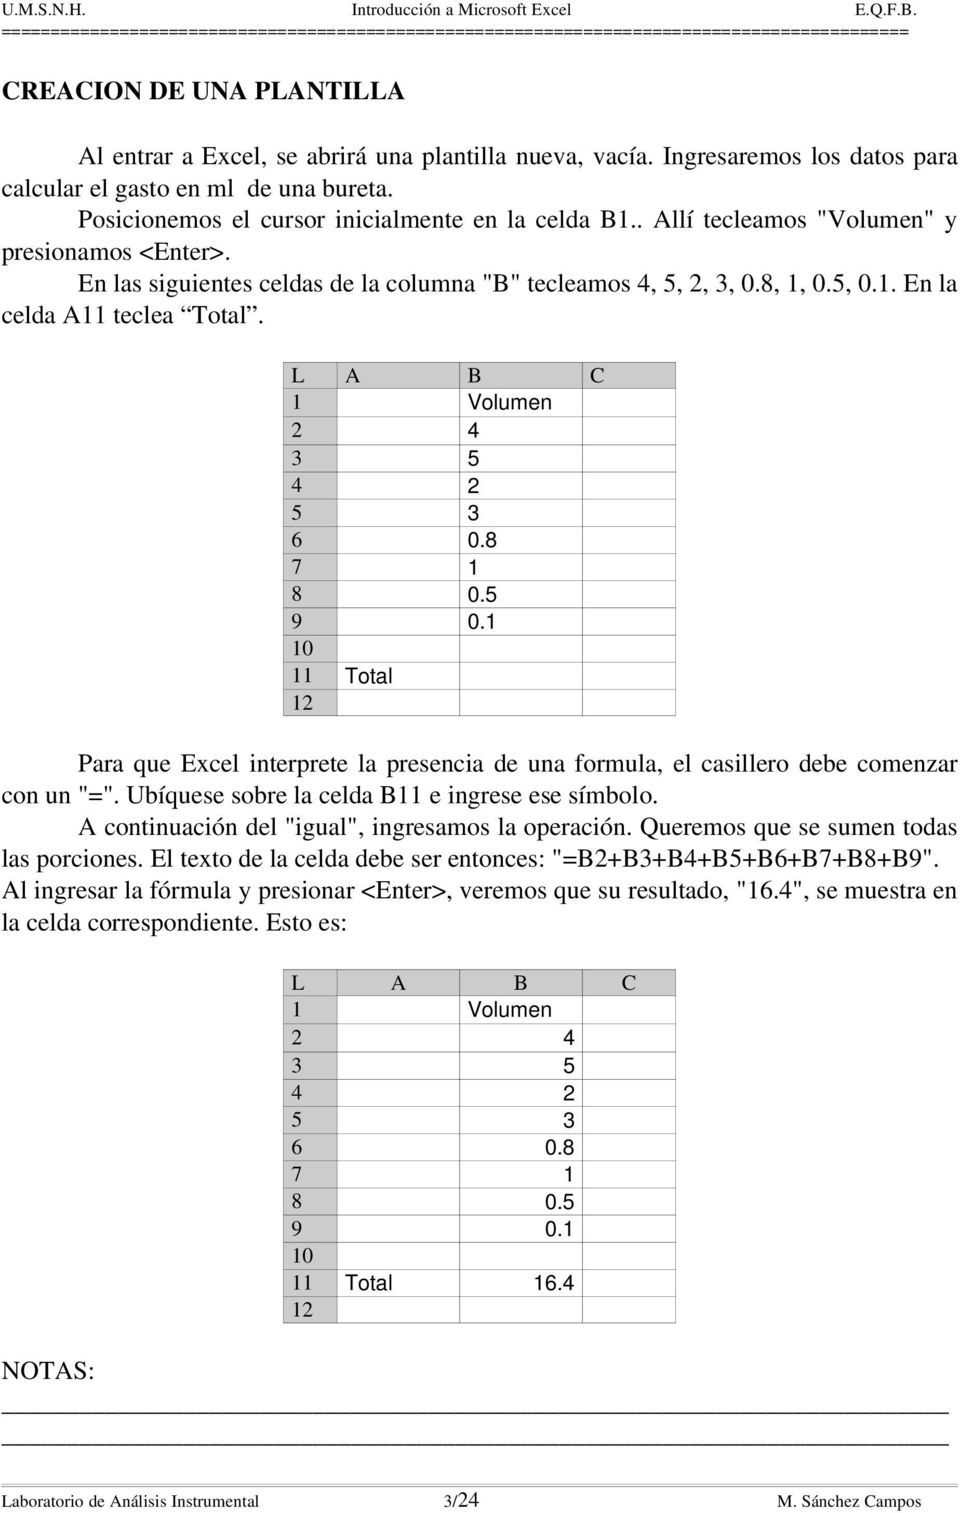 L A B C 1 Volumen 2 4 3 5 4 2 5 3 6 0.8 7 1 8 0.5 9 0.1 10 11 Total 12 Para que Excel interprete la presencia de una formula, el casillero debe comenzar con un "=".